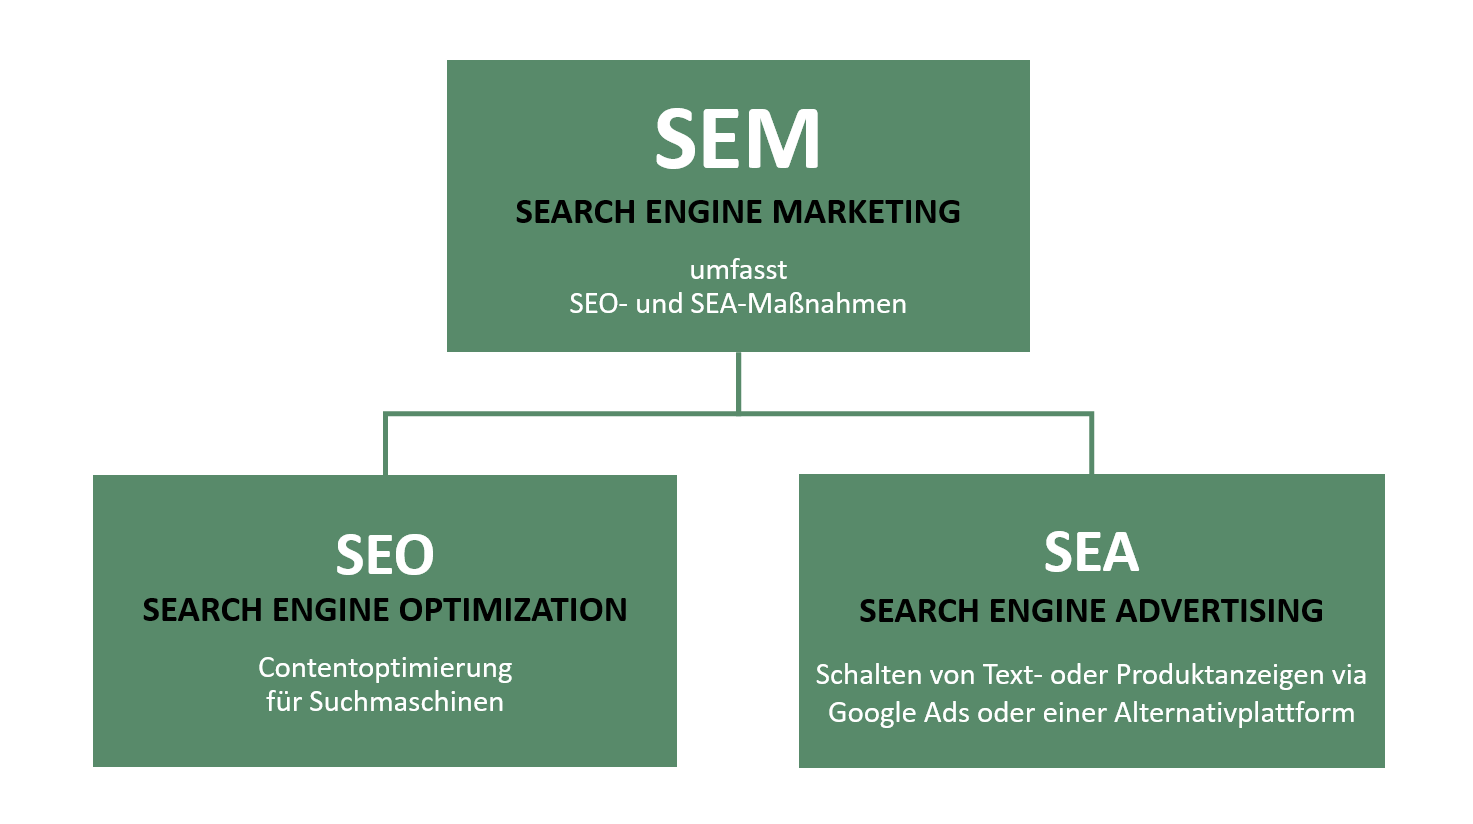 Die Grafik zeigt, dass sich SEM zusammensetzt aus den Bereichen SEO und SEA.

Die Kacheln sind folgendermaßen beschriftet: 

- Kachel 1: SEM, Search Engine Marketing, umfasst 
SEO und SEA Maßnahmen

- Kachel 2: SEO, Search Engine Optimization, Contentoptimierung für Suchmaschinen

- Kachel 3: SEA, SEARCH ENGINE ADVERTISING, schalten von Text- oder Produktanzeigen via Google Ads oder einer Alternativplattform